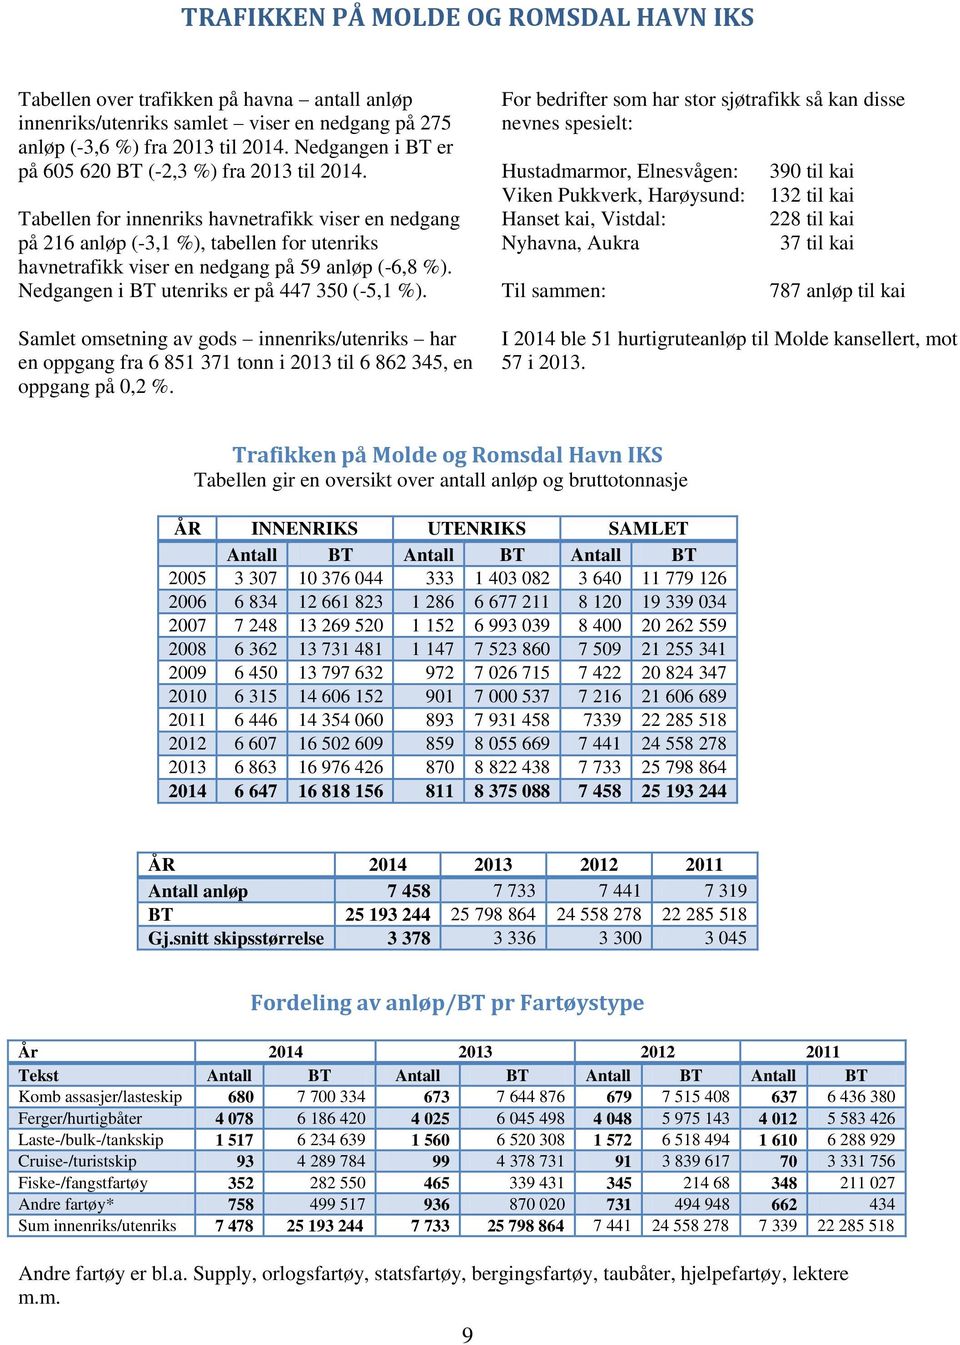 Tabellen for innenriks havnetrafikk viser en nedgang på 216 anløp (-3,1 %), tabellen for utenriks havnetrafikk viser en nedgang på 59 anløp (-6,8 %). Nedgangen i BT utenriks er på 447 350 (-5,1 %).